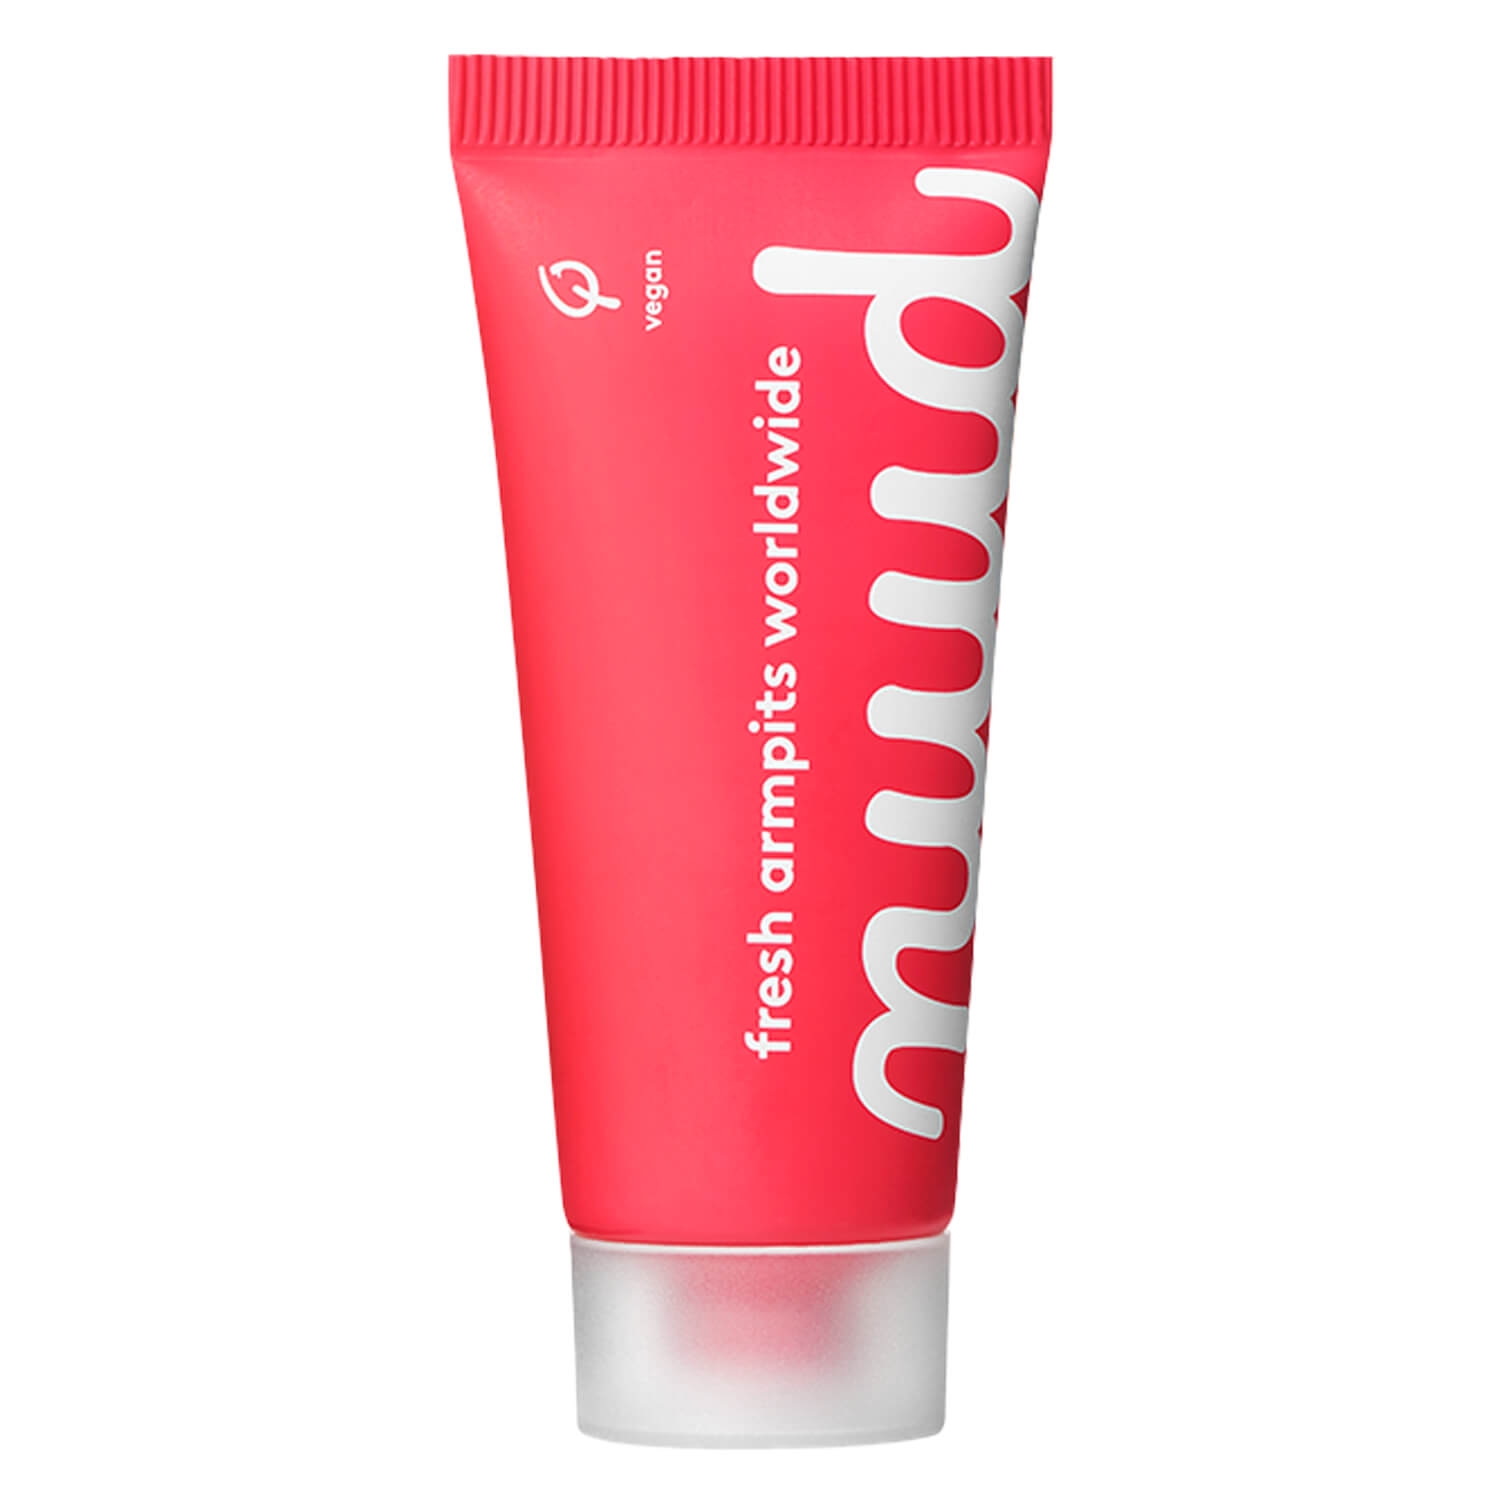 Produktbild von nuud - Deo Starter Pack pink new formula